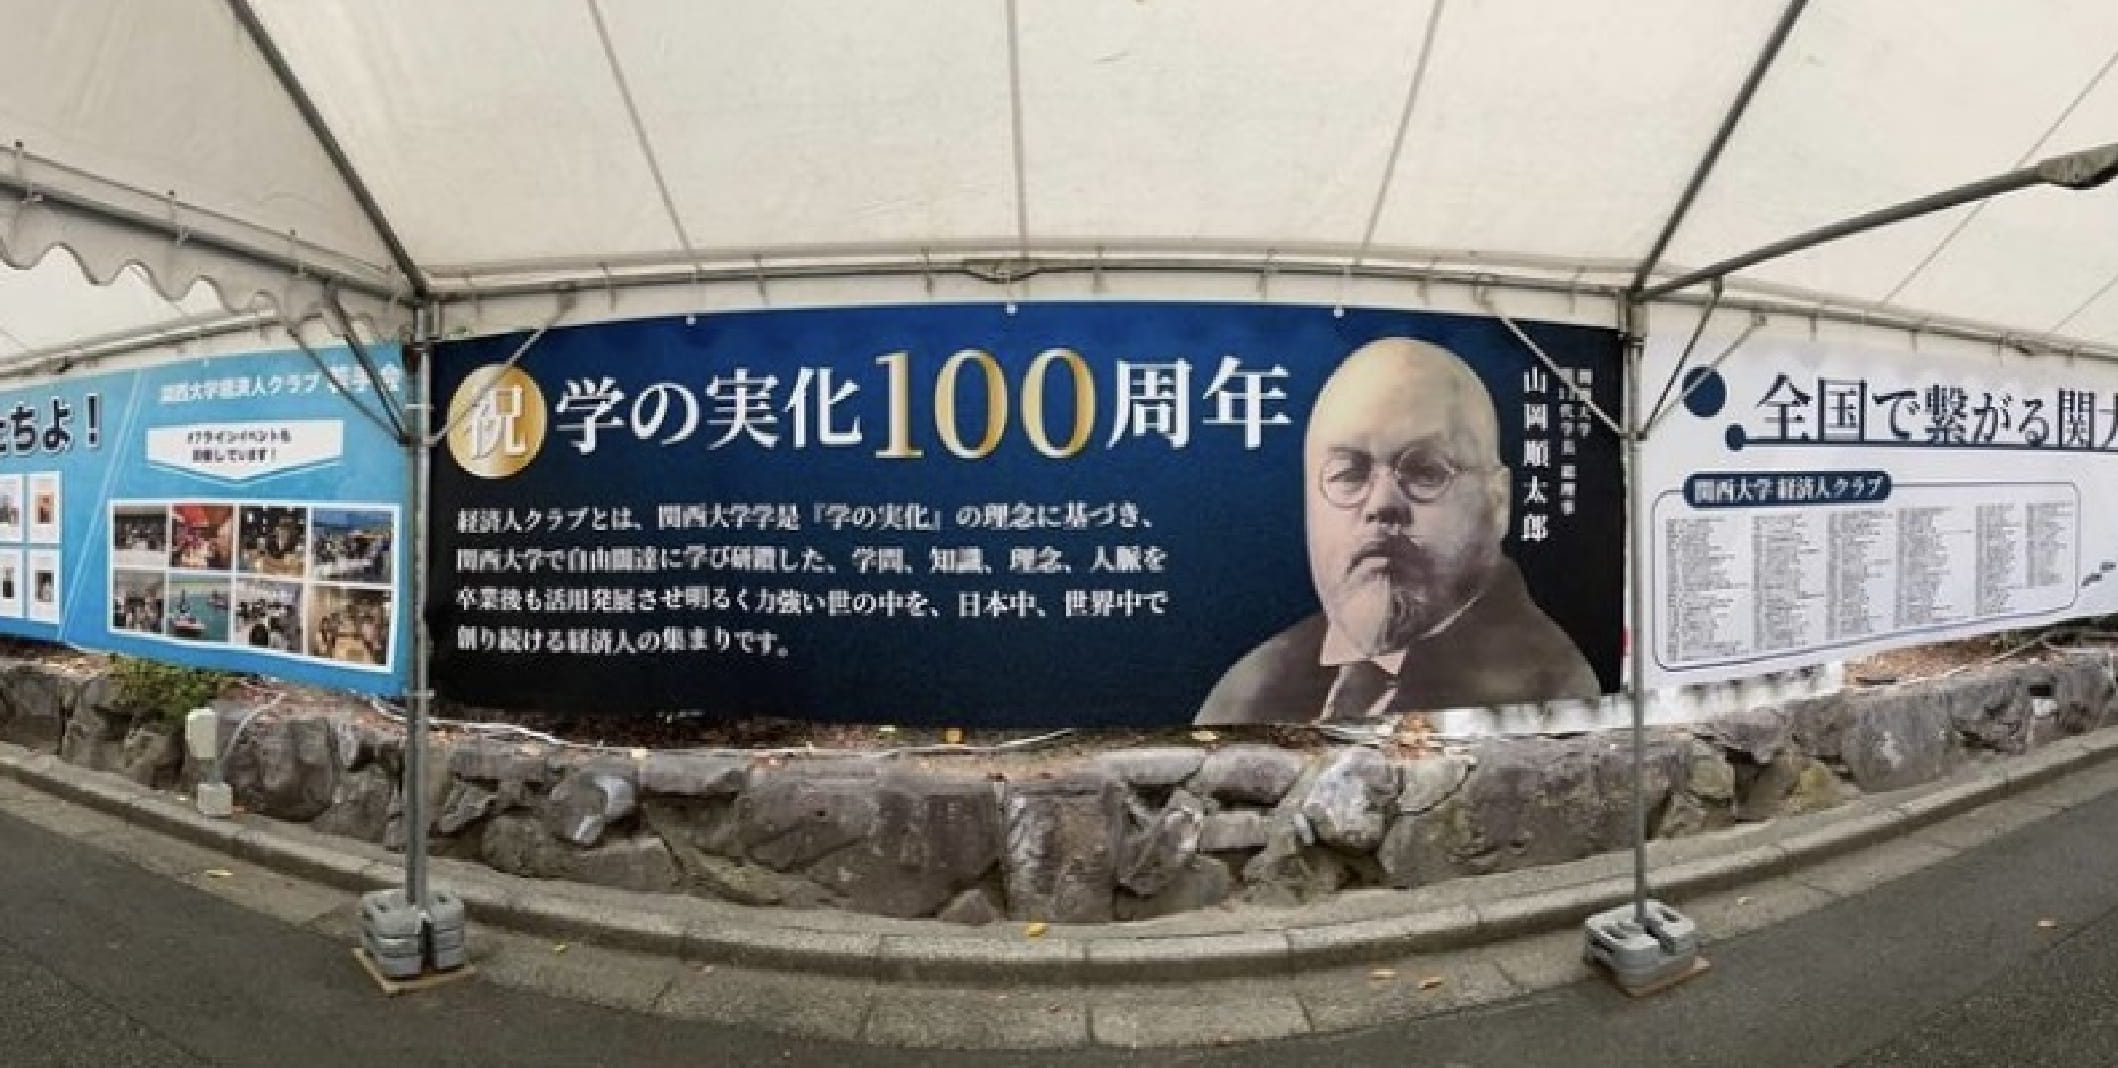 関西大学経済人クラブ100周年記念イベント企画ブースの様子